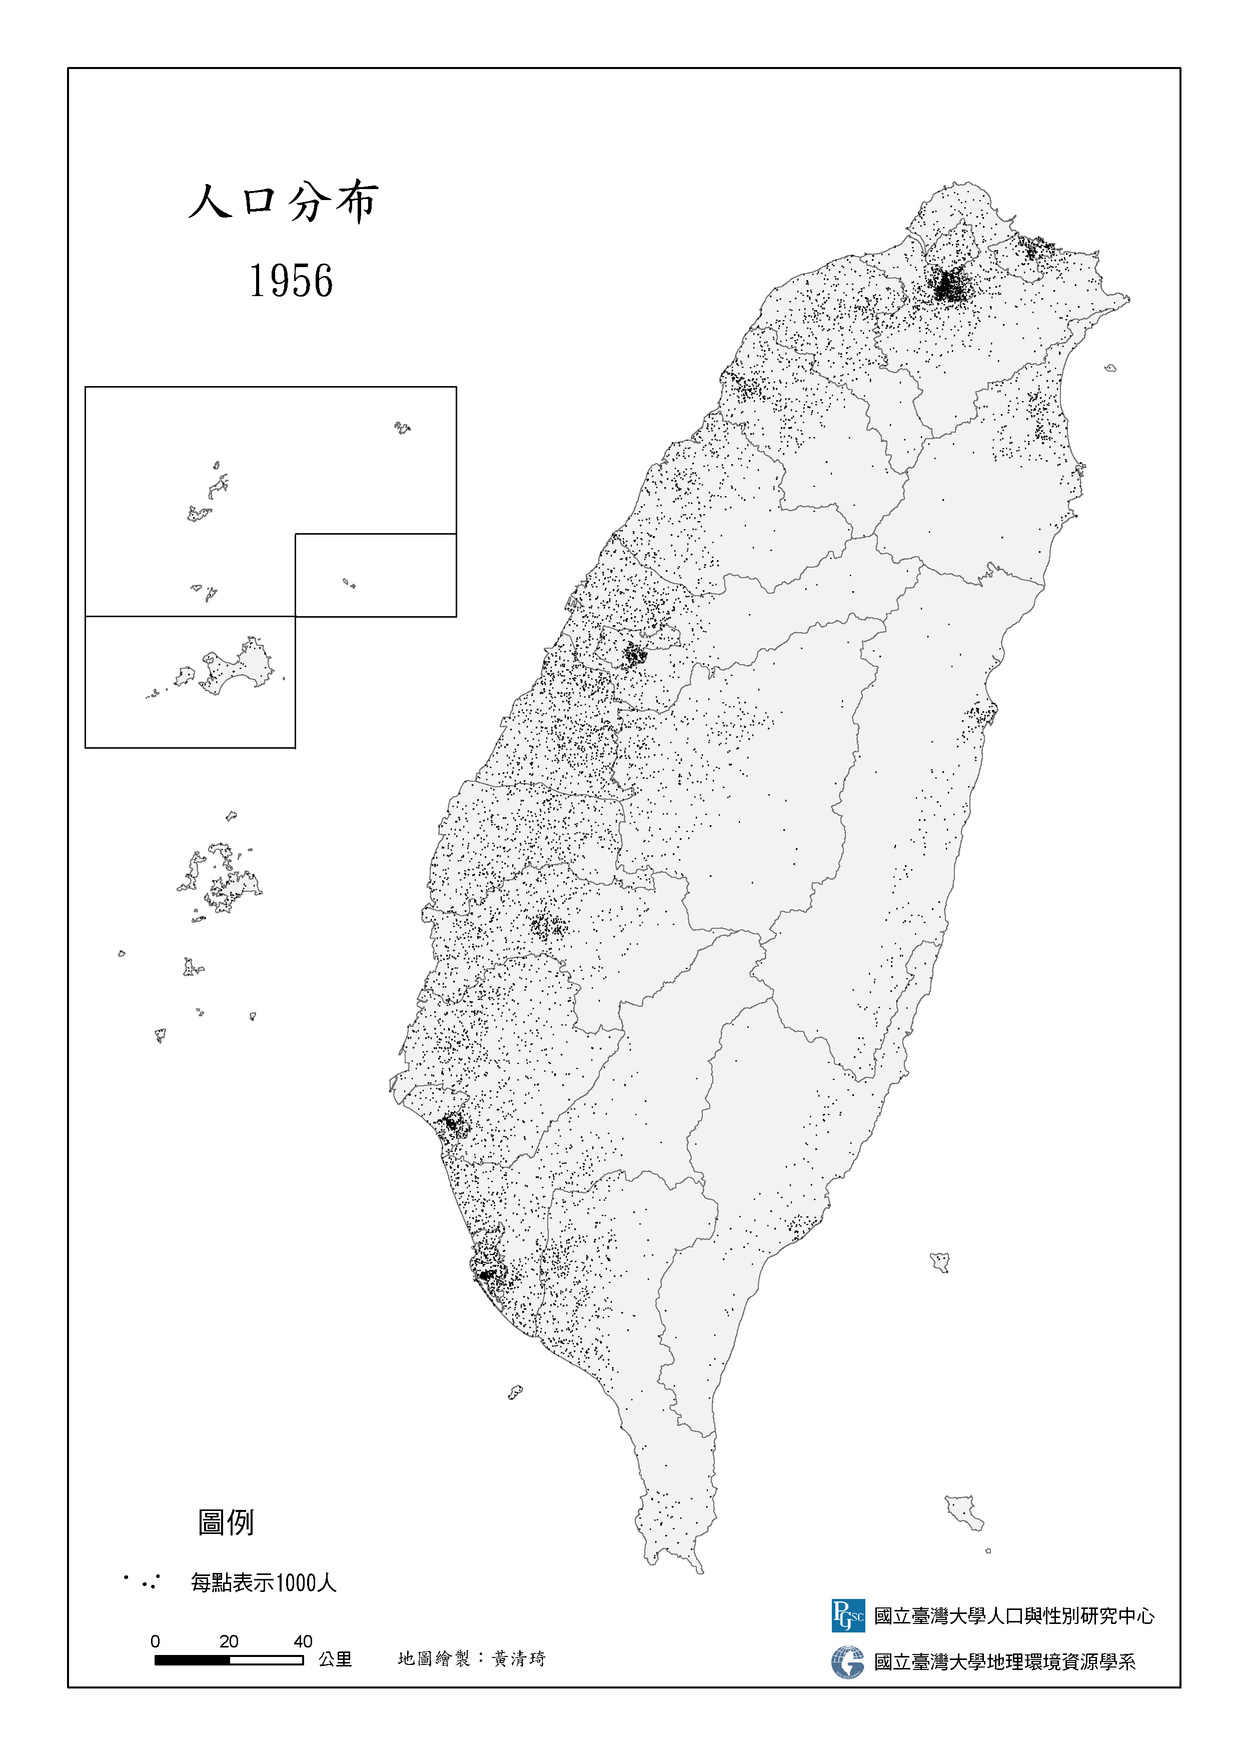 臺灣人口分布 1956-2010